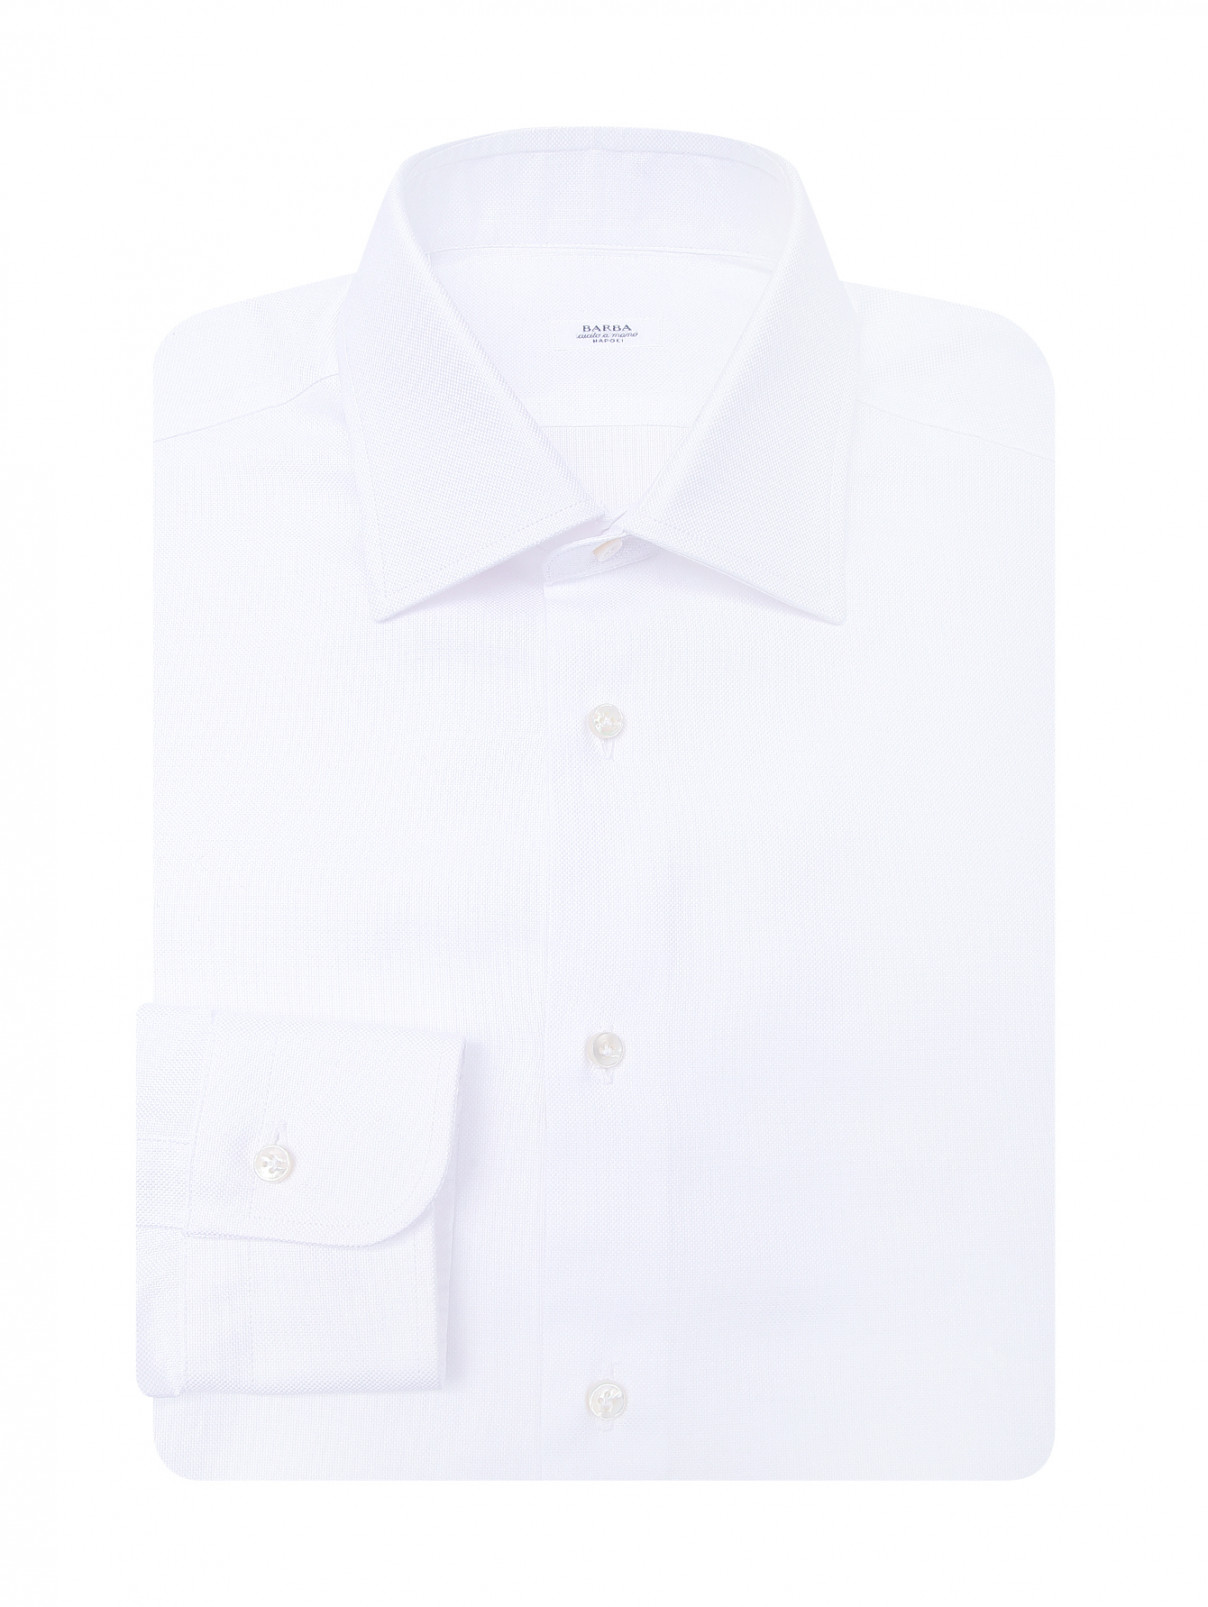 Классическая рубашка из хлопка Barba Napoli  –  Общий вид  – Цвет:  Белый